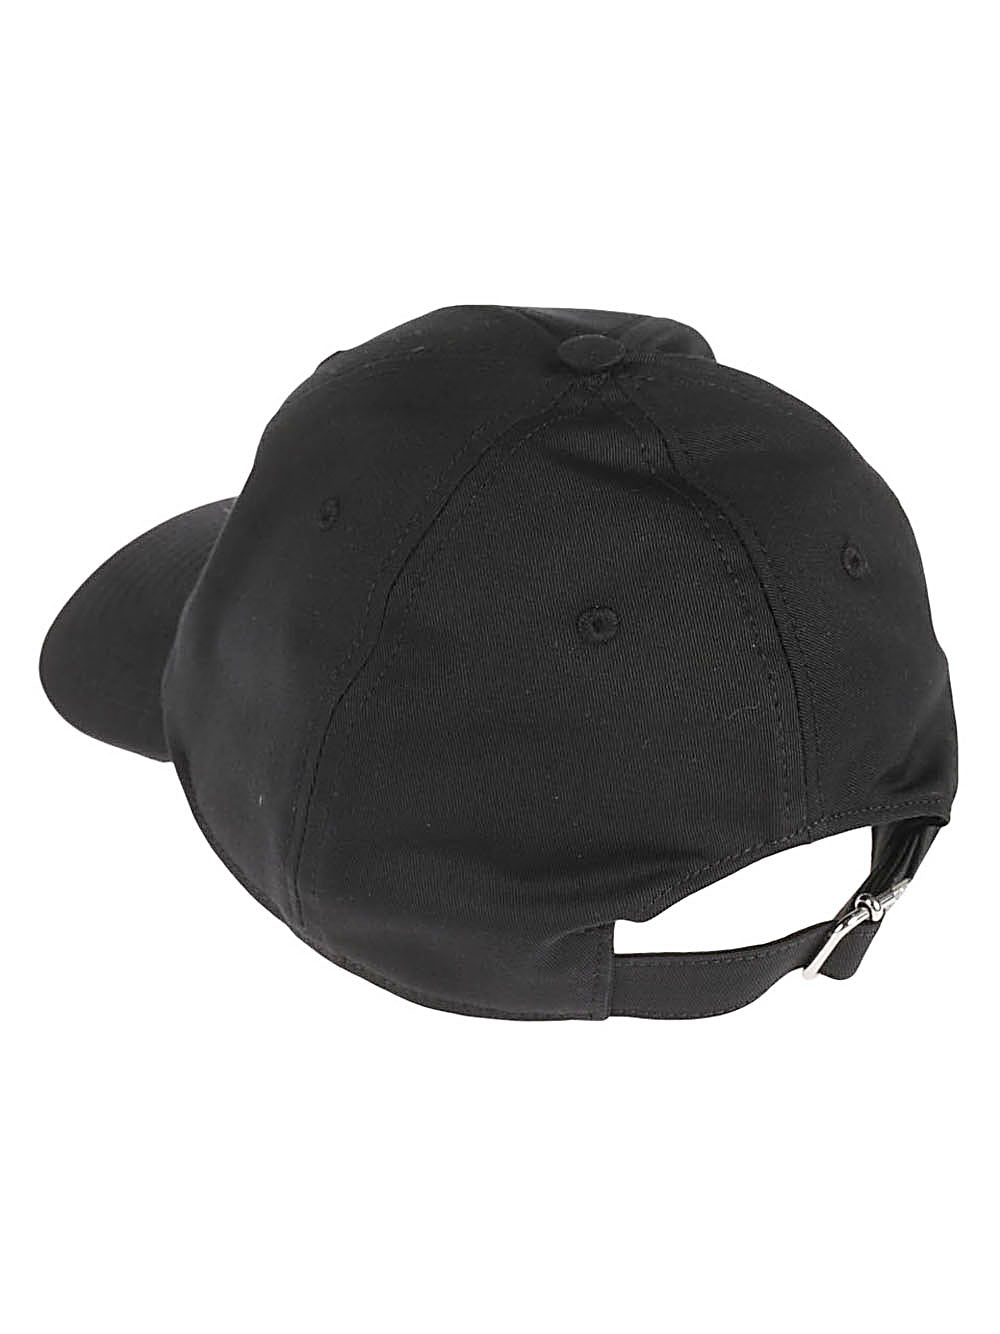 Armarium Hats Black